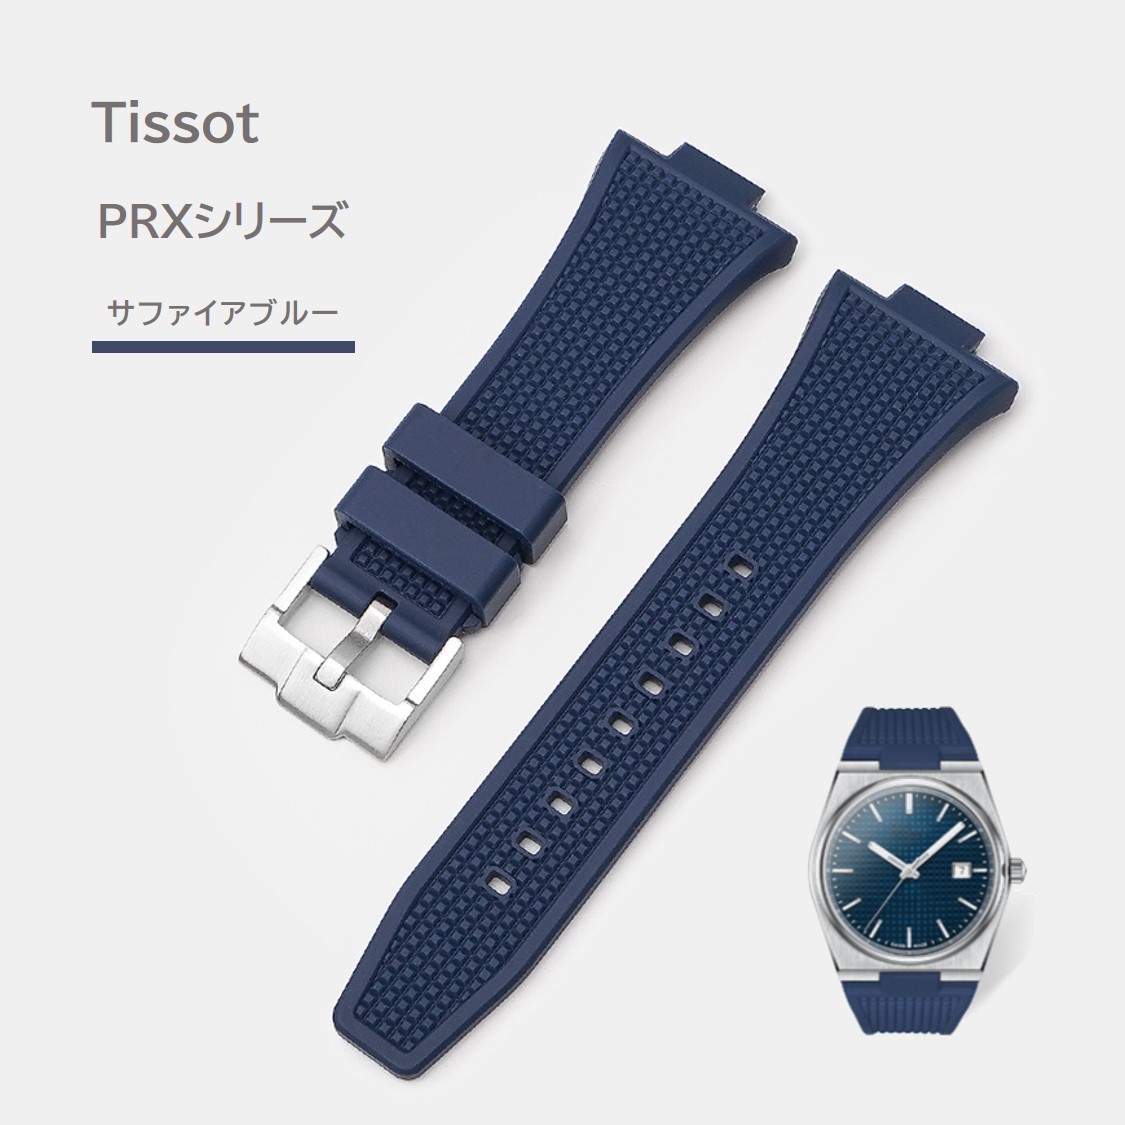 Tissot PRXシリーズ ラバーベルト サファイアブルー